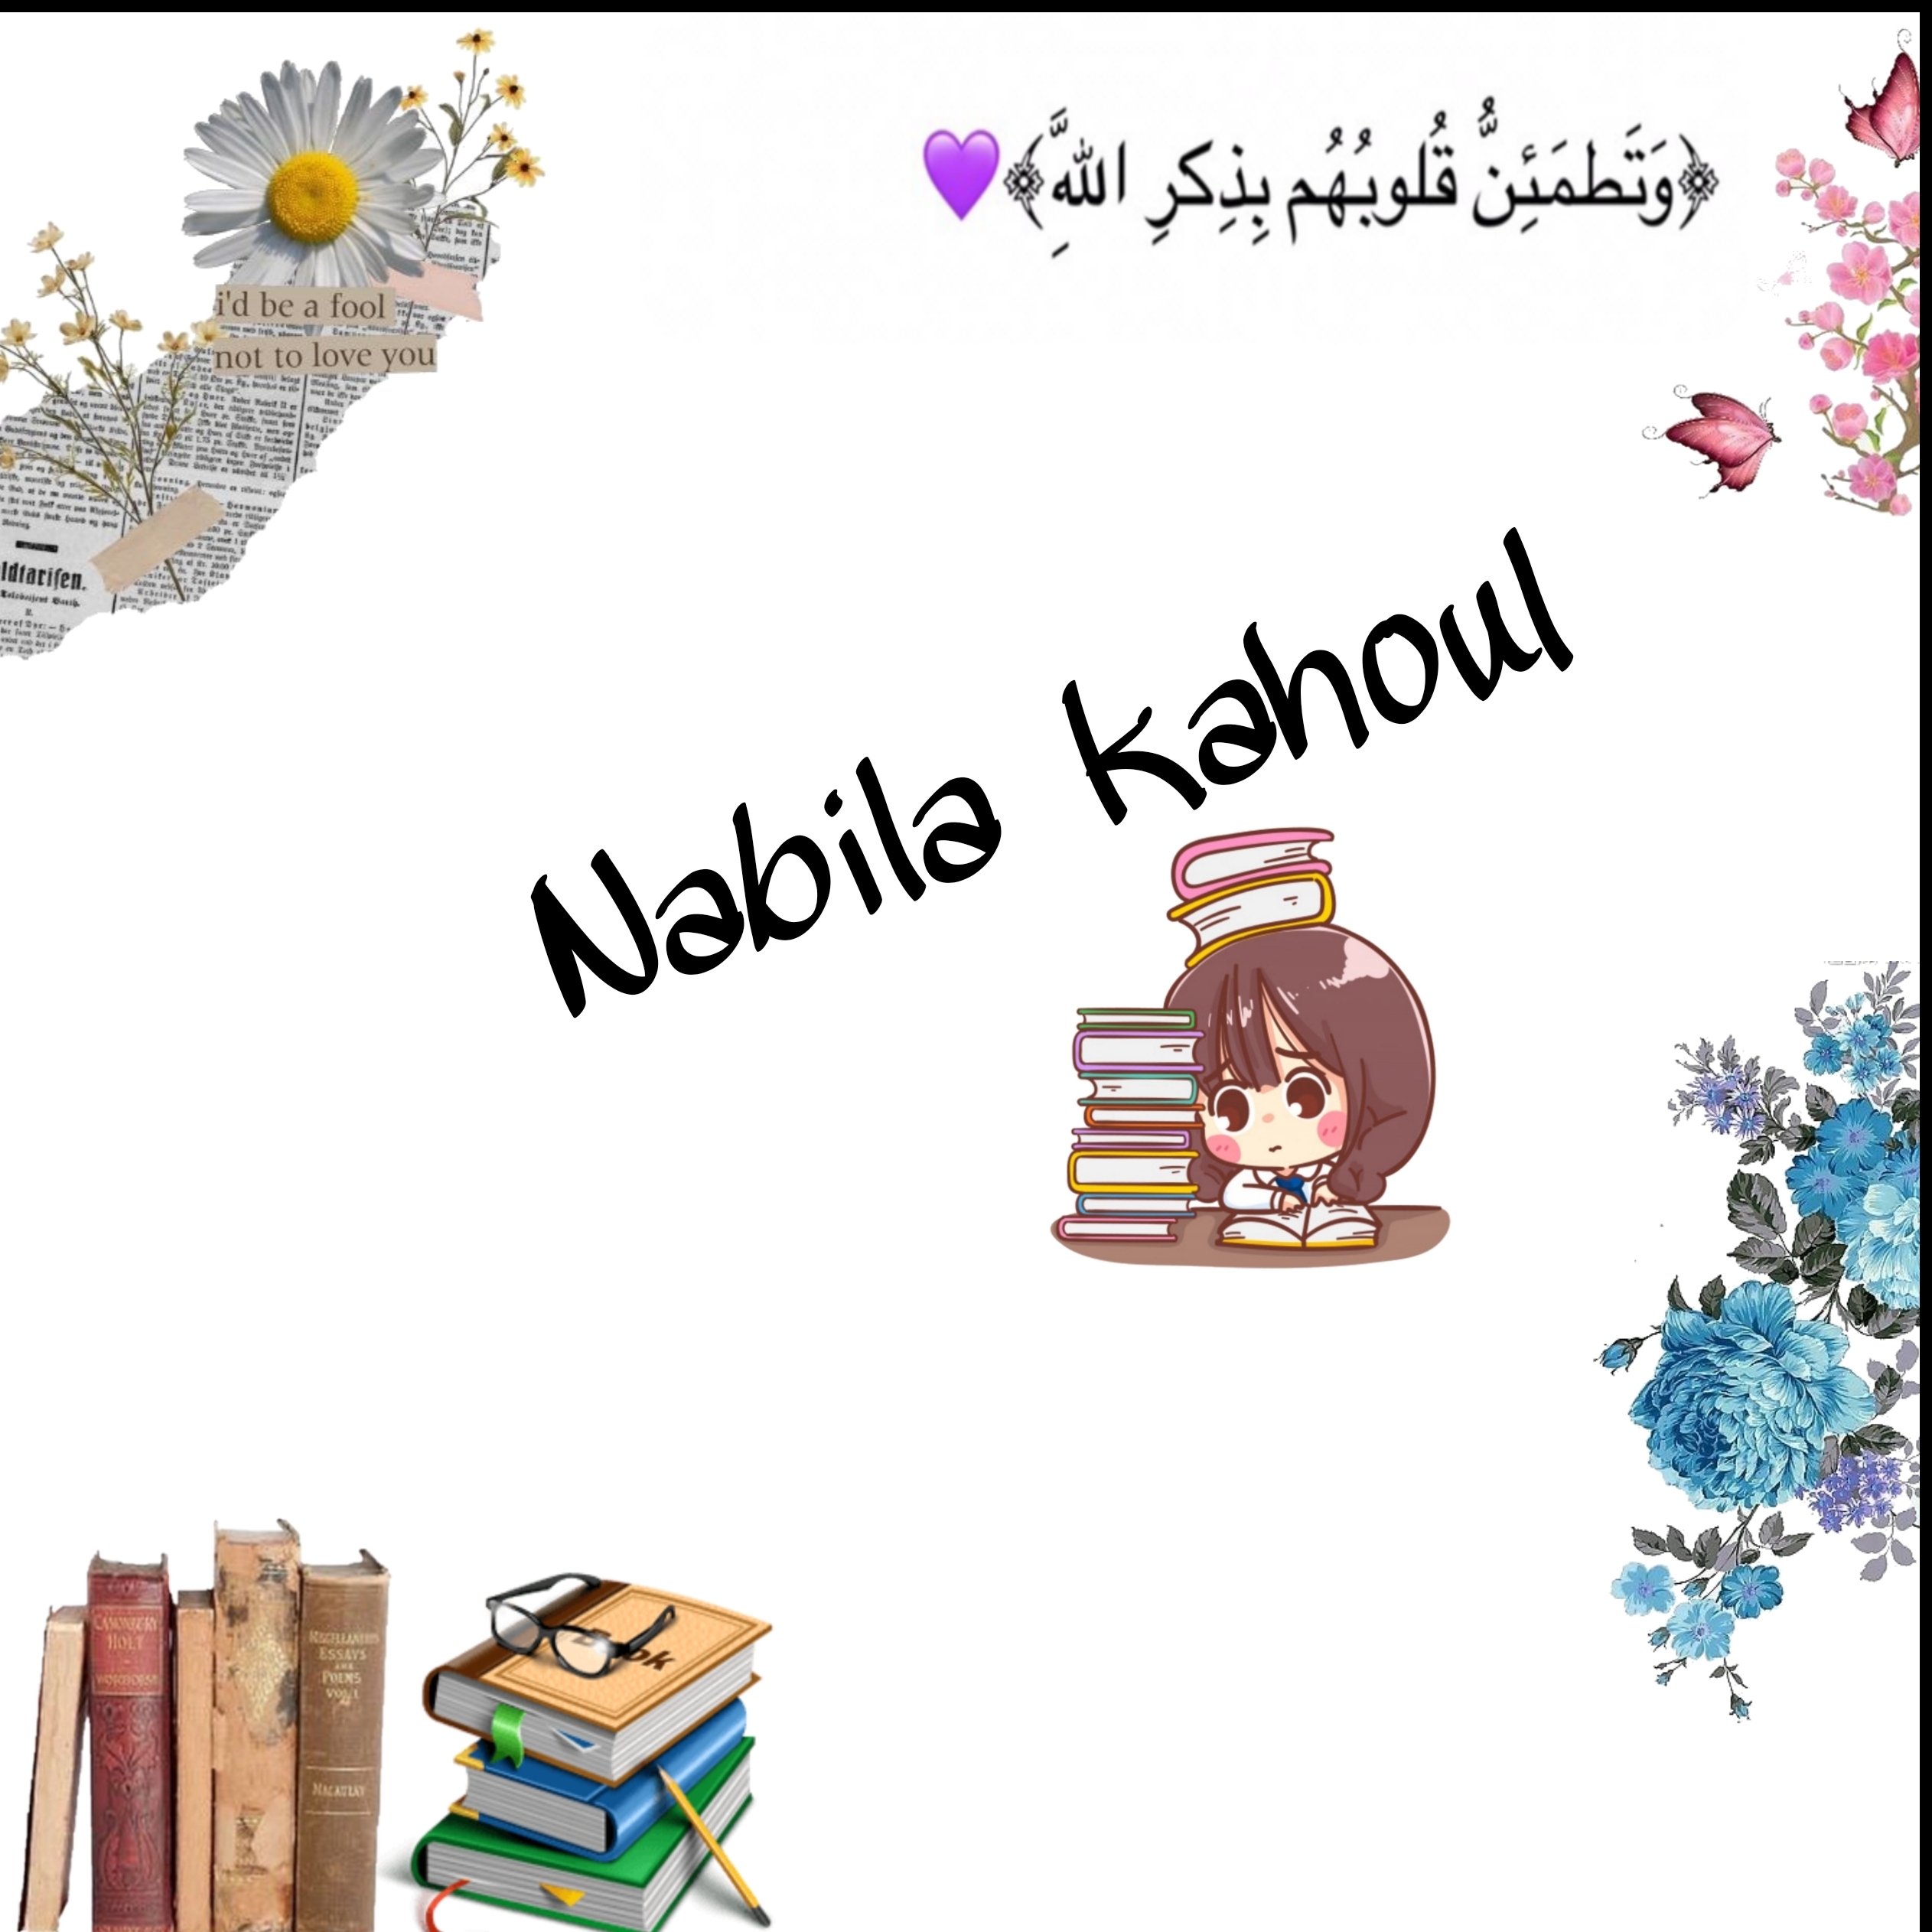 Nabila Kahoul